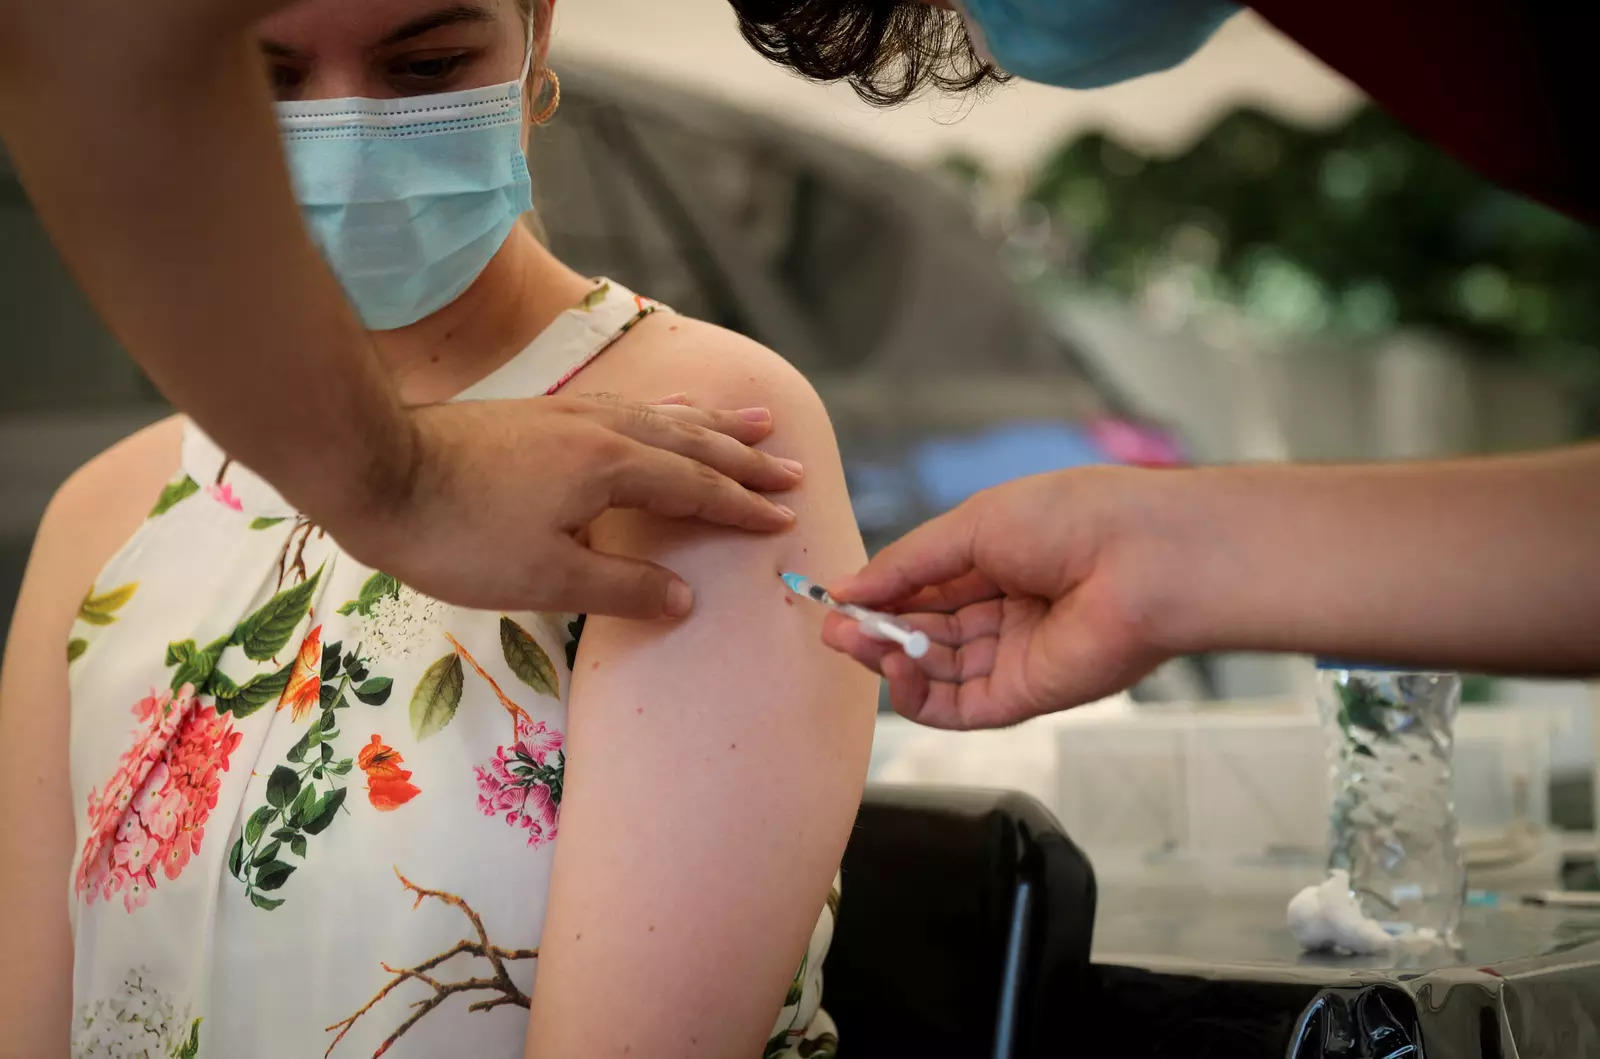 در بحبوحه افزایش موارد کووید، مرکز از دهلی و 6 ایالت می خواهد که روی آزمایش و واکسیناسیون تمرکز کنند.